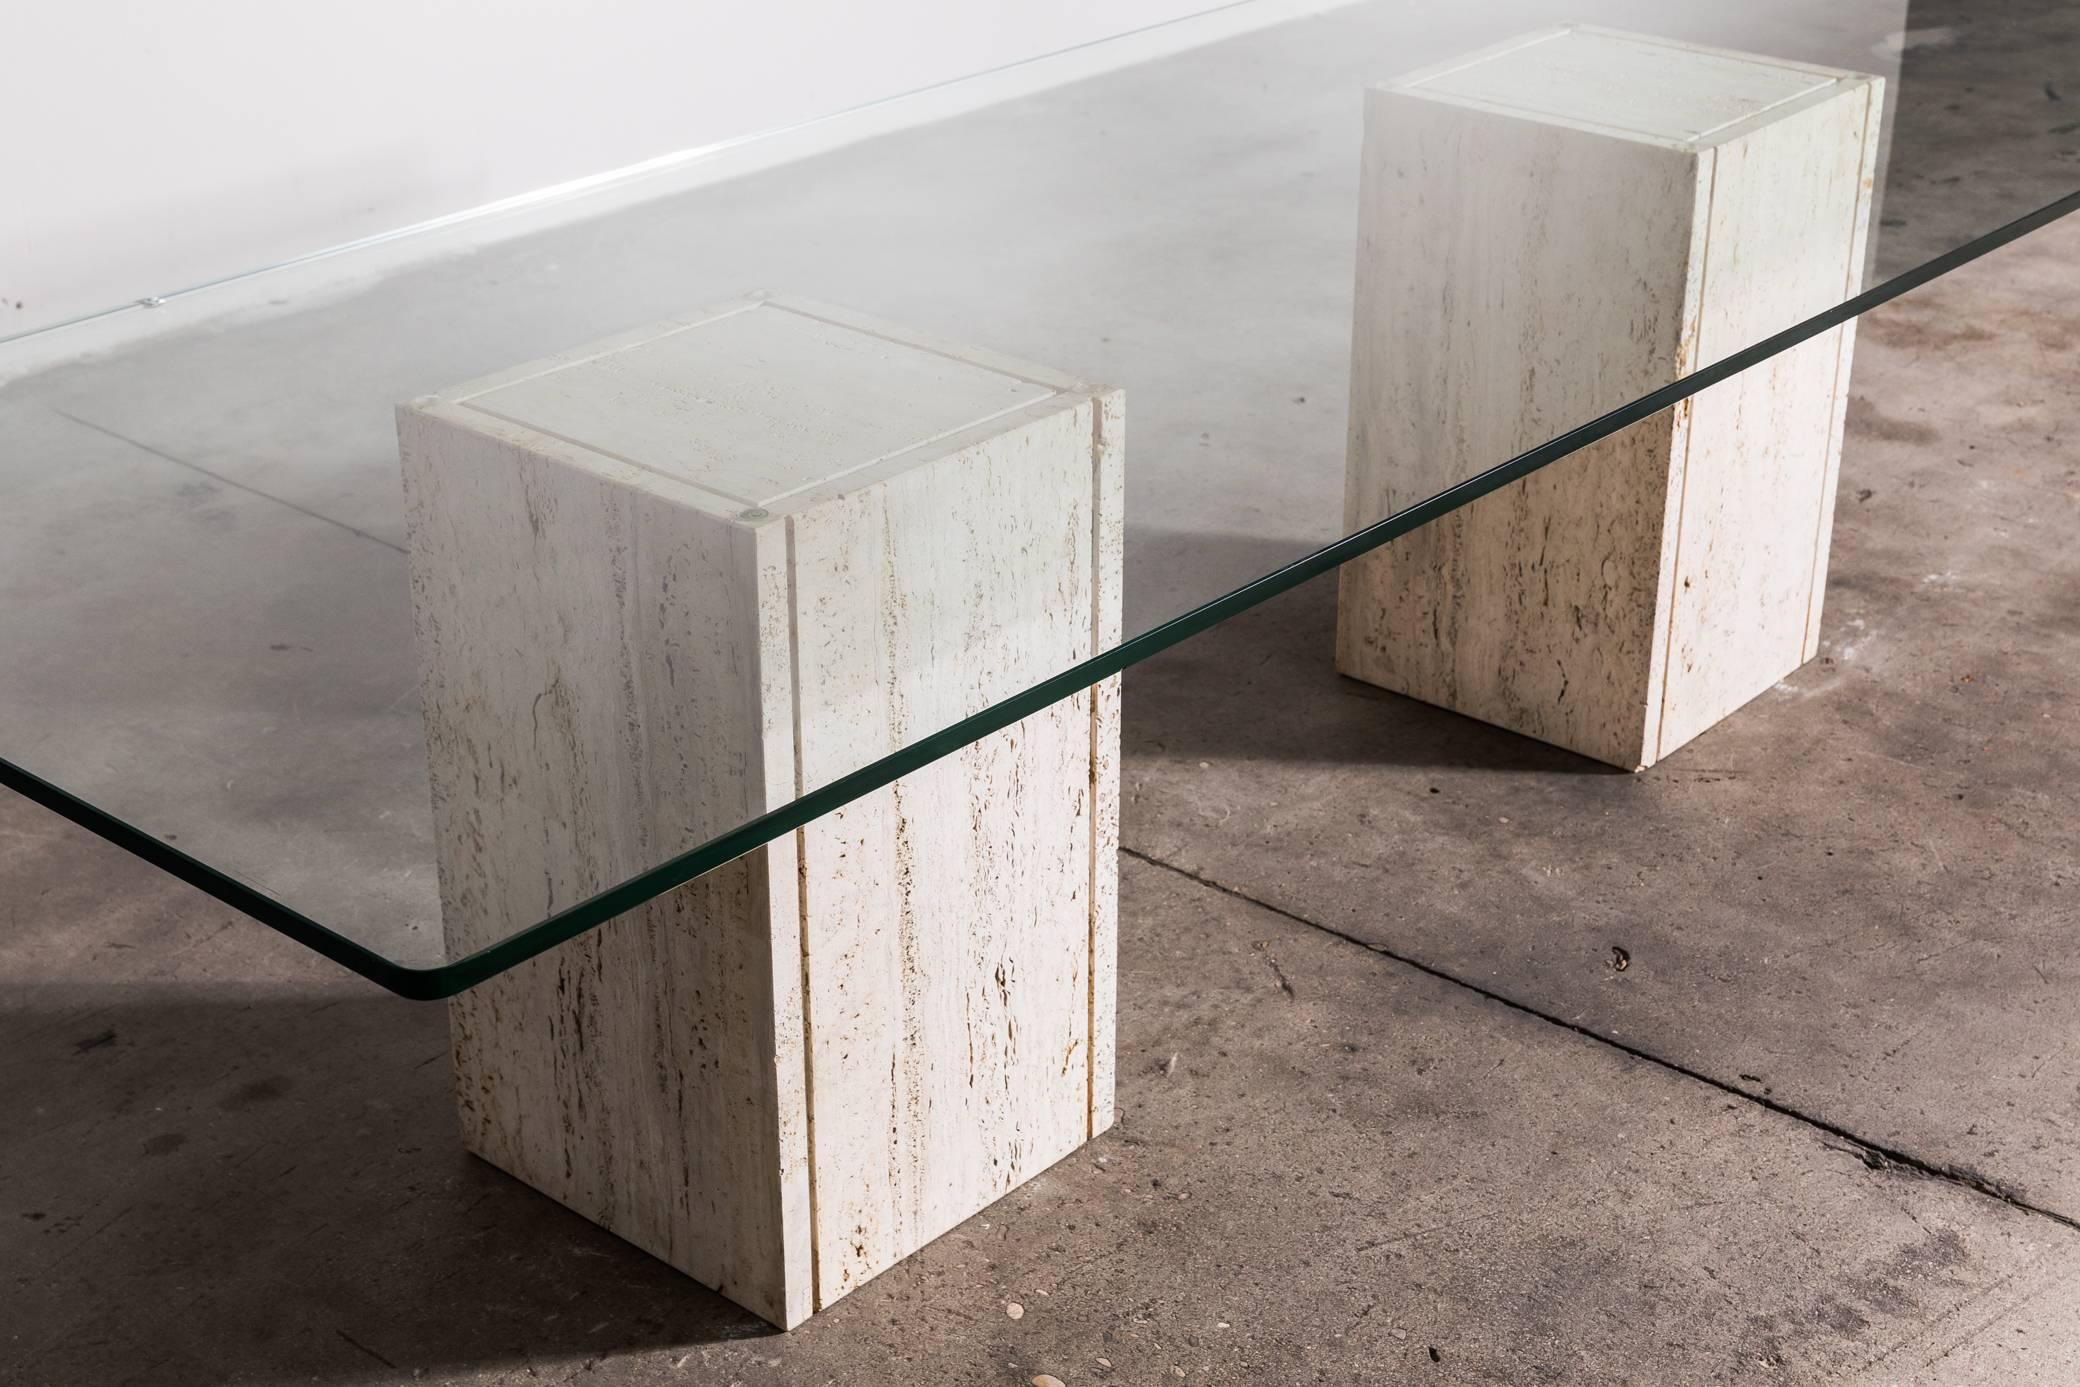 Le magnifique plateau en verre (2 cm) a des bords arrondis et repose sur deux blocs de travertin massif. Peut être utilisée comme table de salle à manger ou de conférence. Produit par Roger Vanhevel, 1970, Belgique.

 